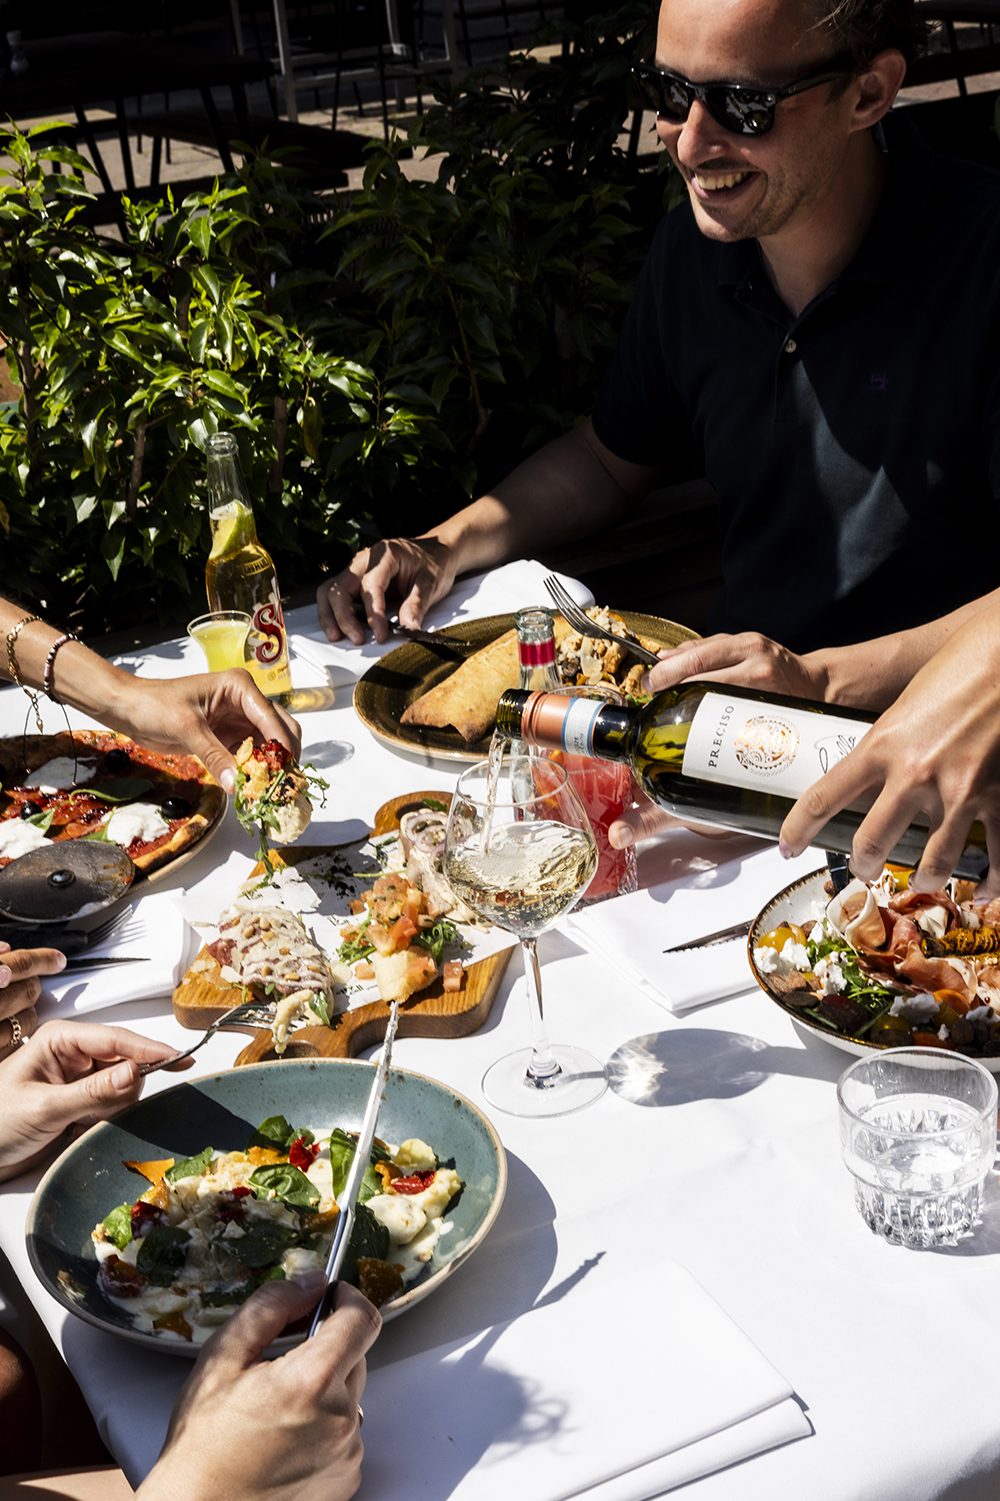 Wij staan er iedere dag voor je, met die kenmerkende Italiaanse opwinding en passie voor smaakvol eten en drinken.